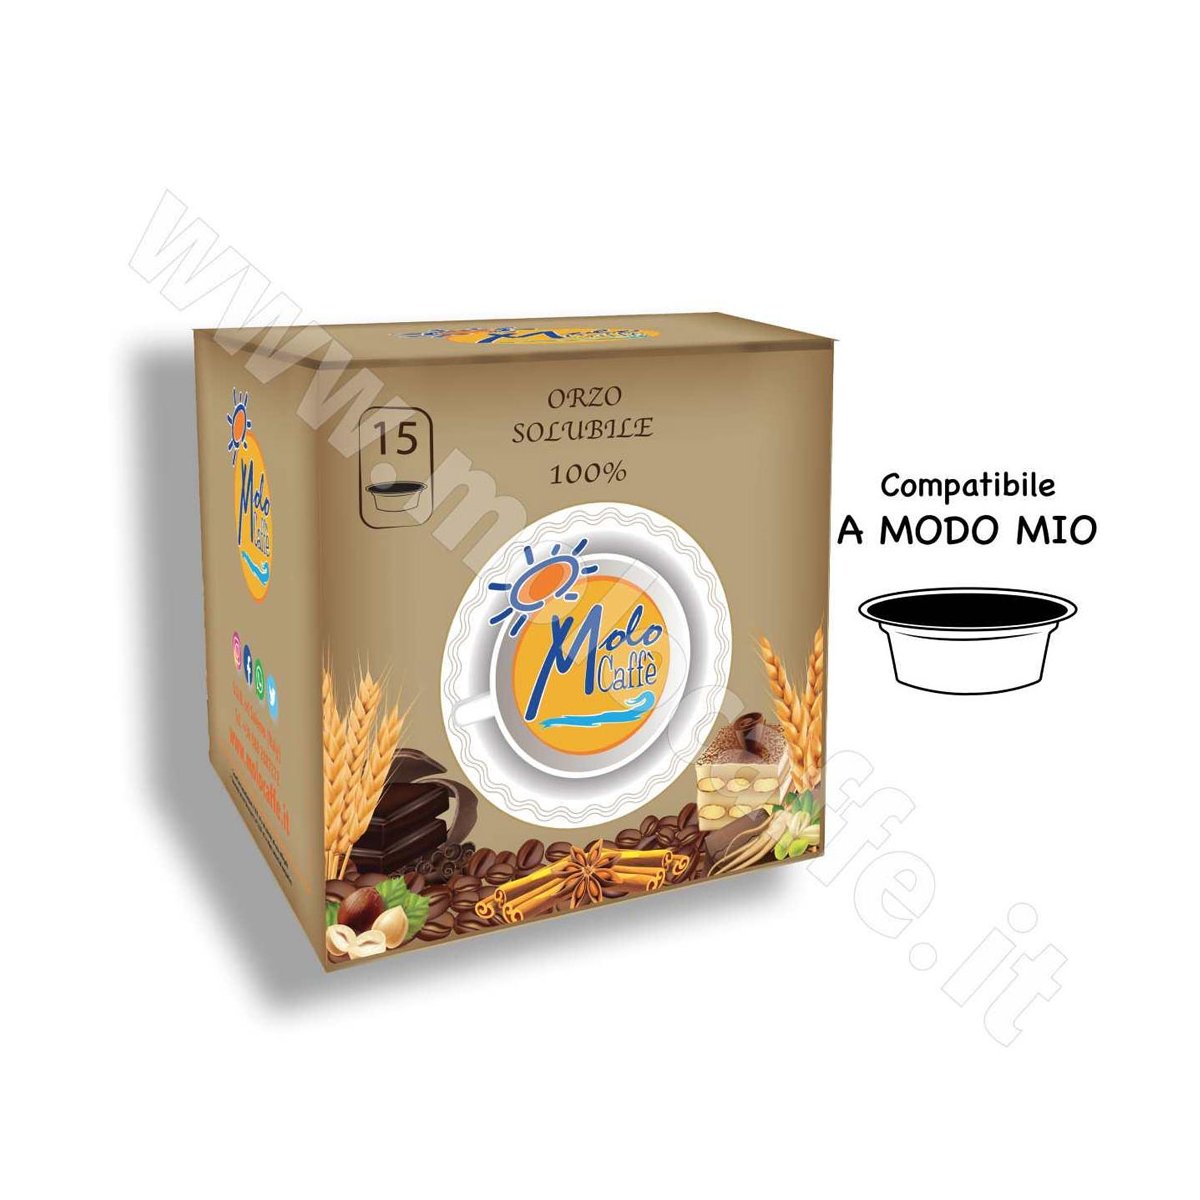 ORZO SOLUBILE 100% Capsule Compatibili A MODO MIO - Box 15 Pezzi